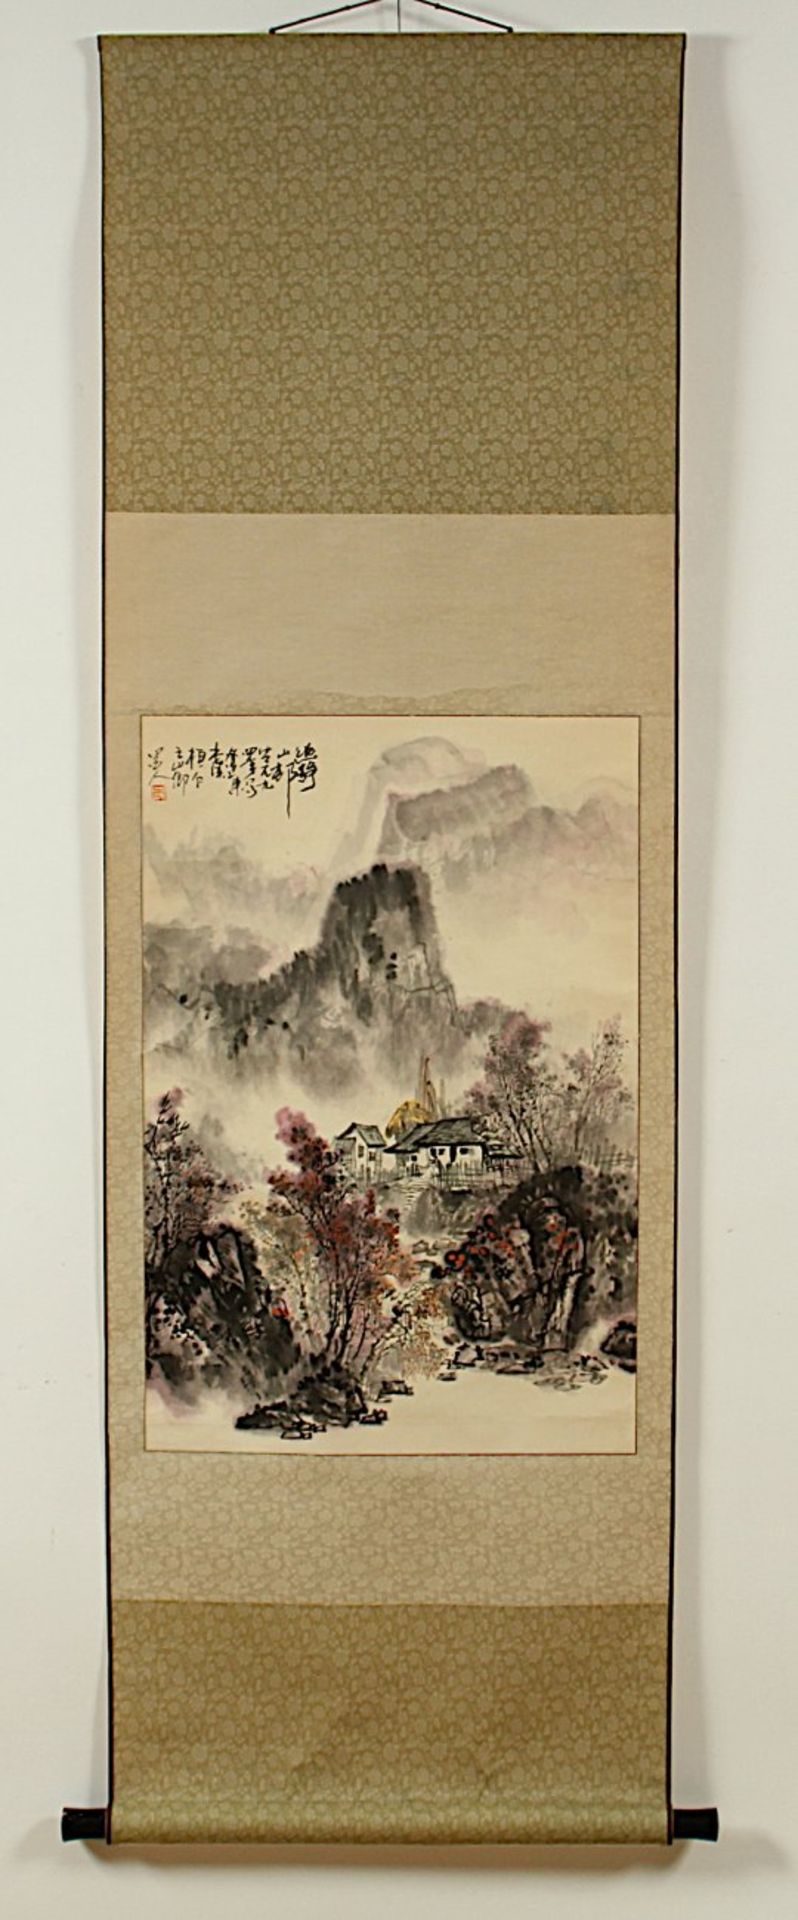 ROLLBILD, Tusche und Farben auf Papier, Landschaft, Aufschrift und Siegel, 68 x 45, montiert, CHINA, - Image 2 of 4